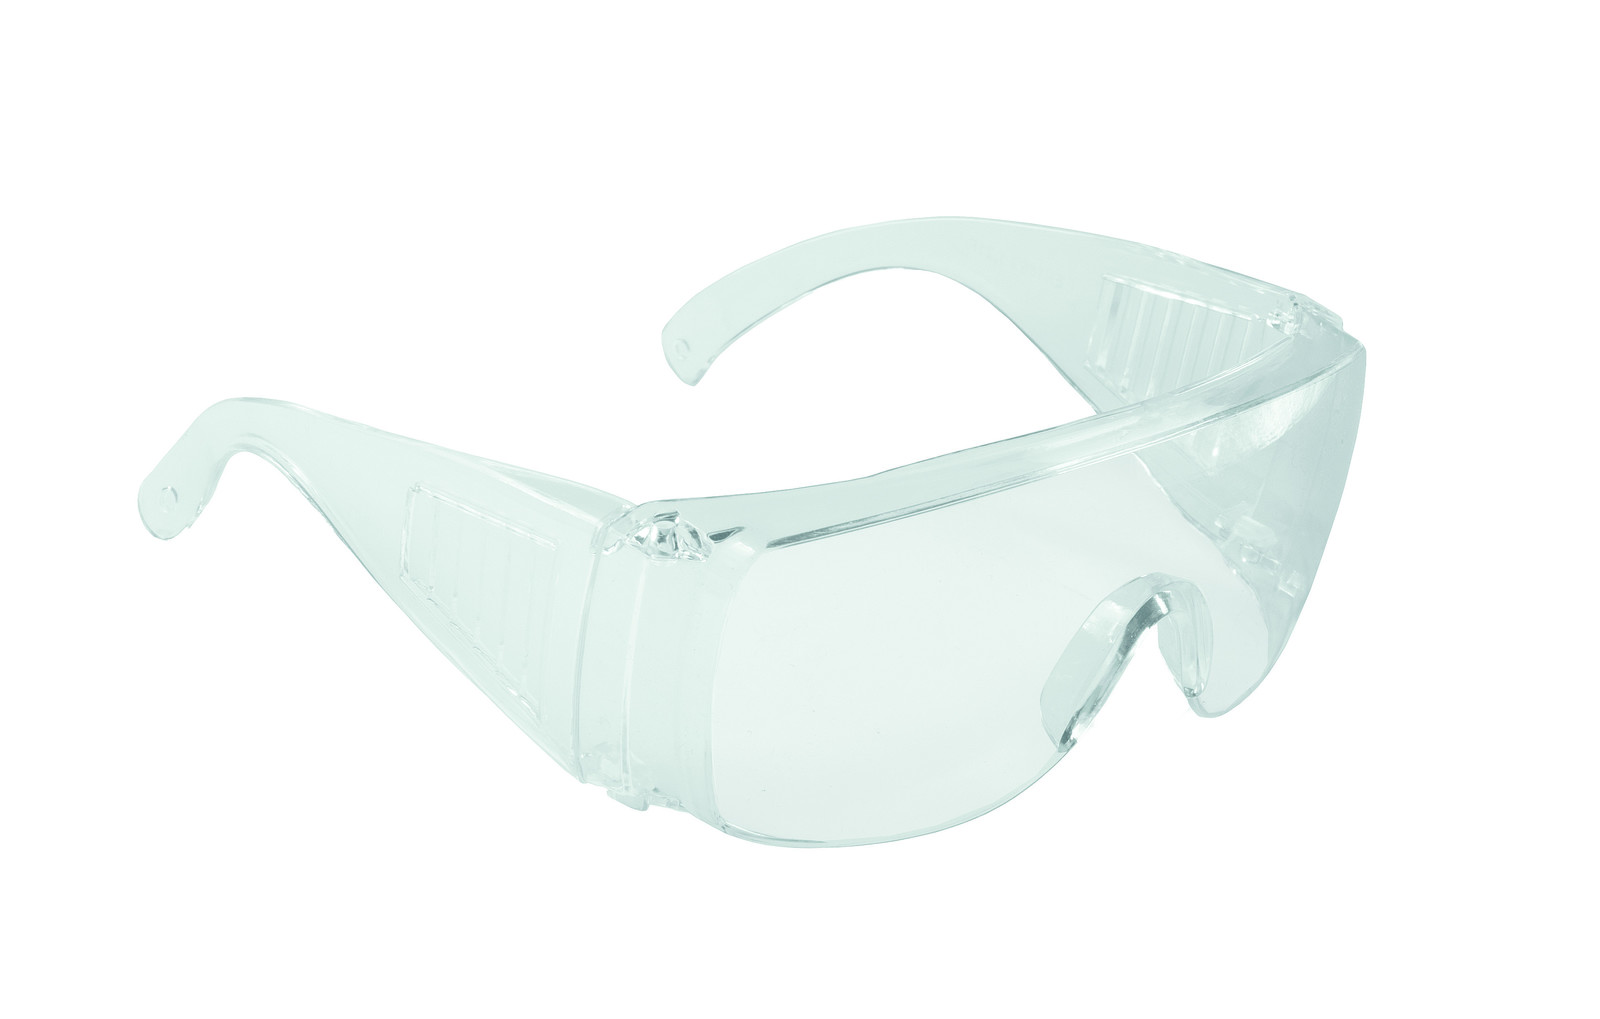 Ochranné okuliare AS 01-001 - farba: číra